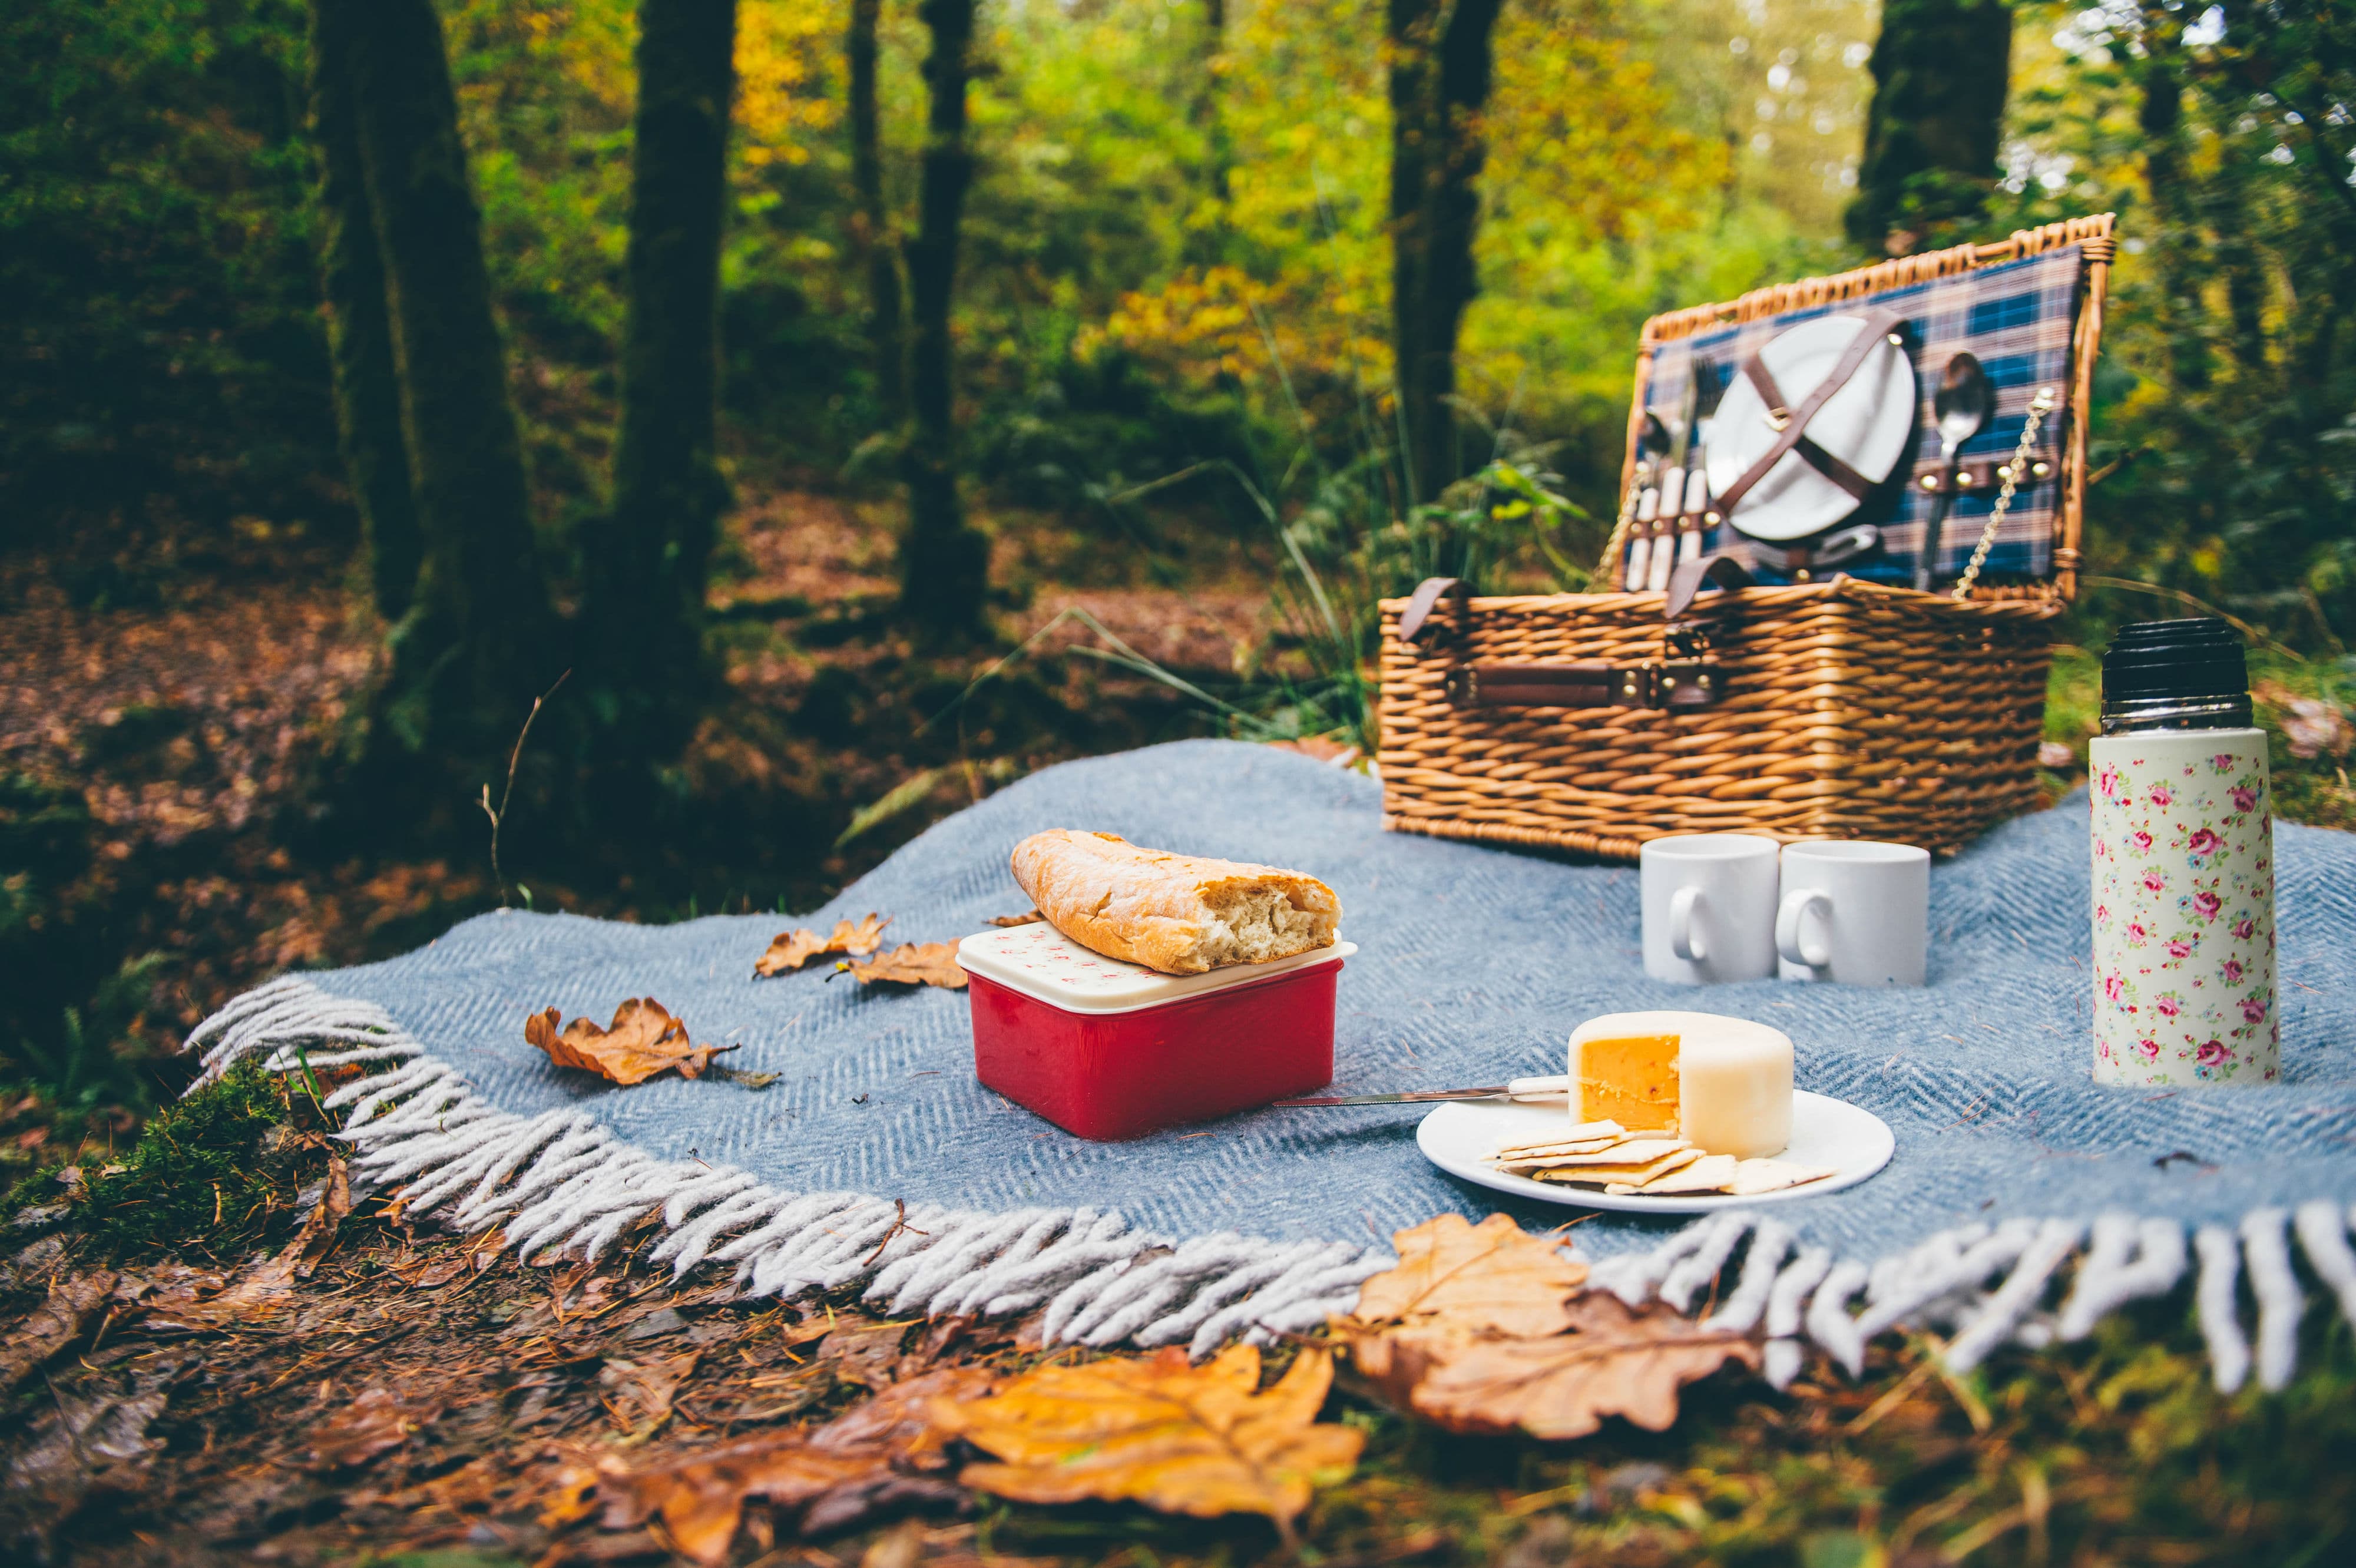 Пикник закончился. Пикник на природе. Пикник в лесу. Стол на природе. Пикник на природе осень.